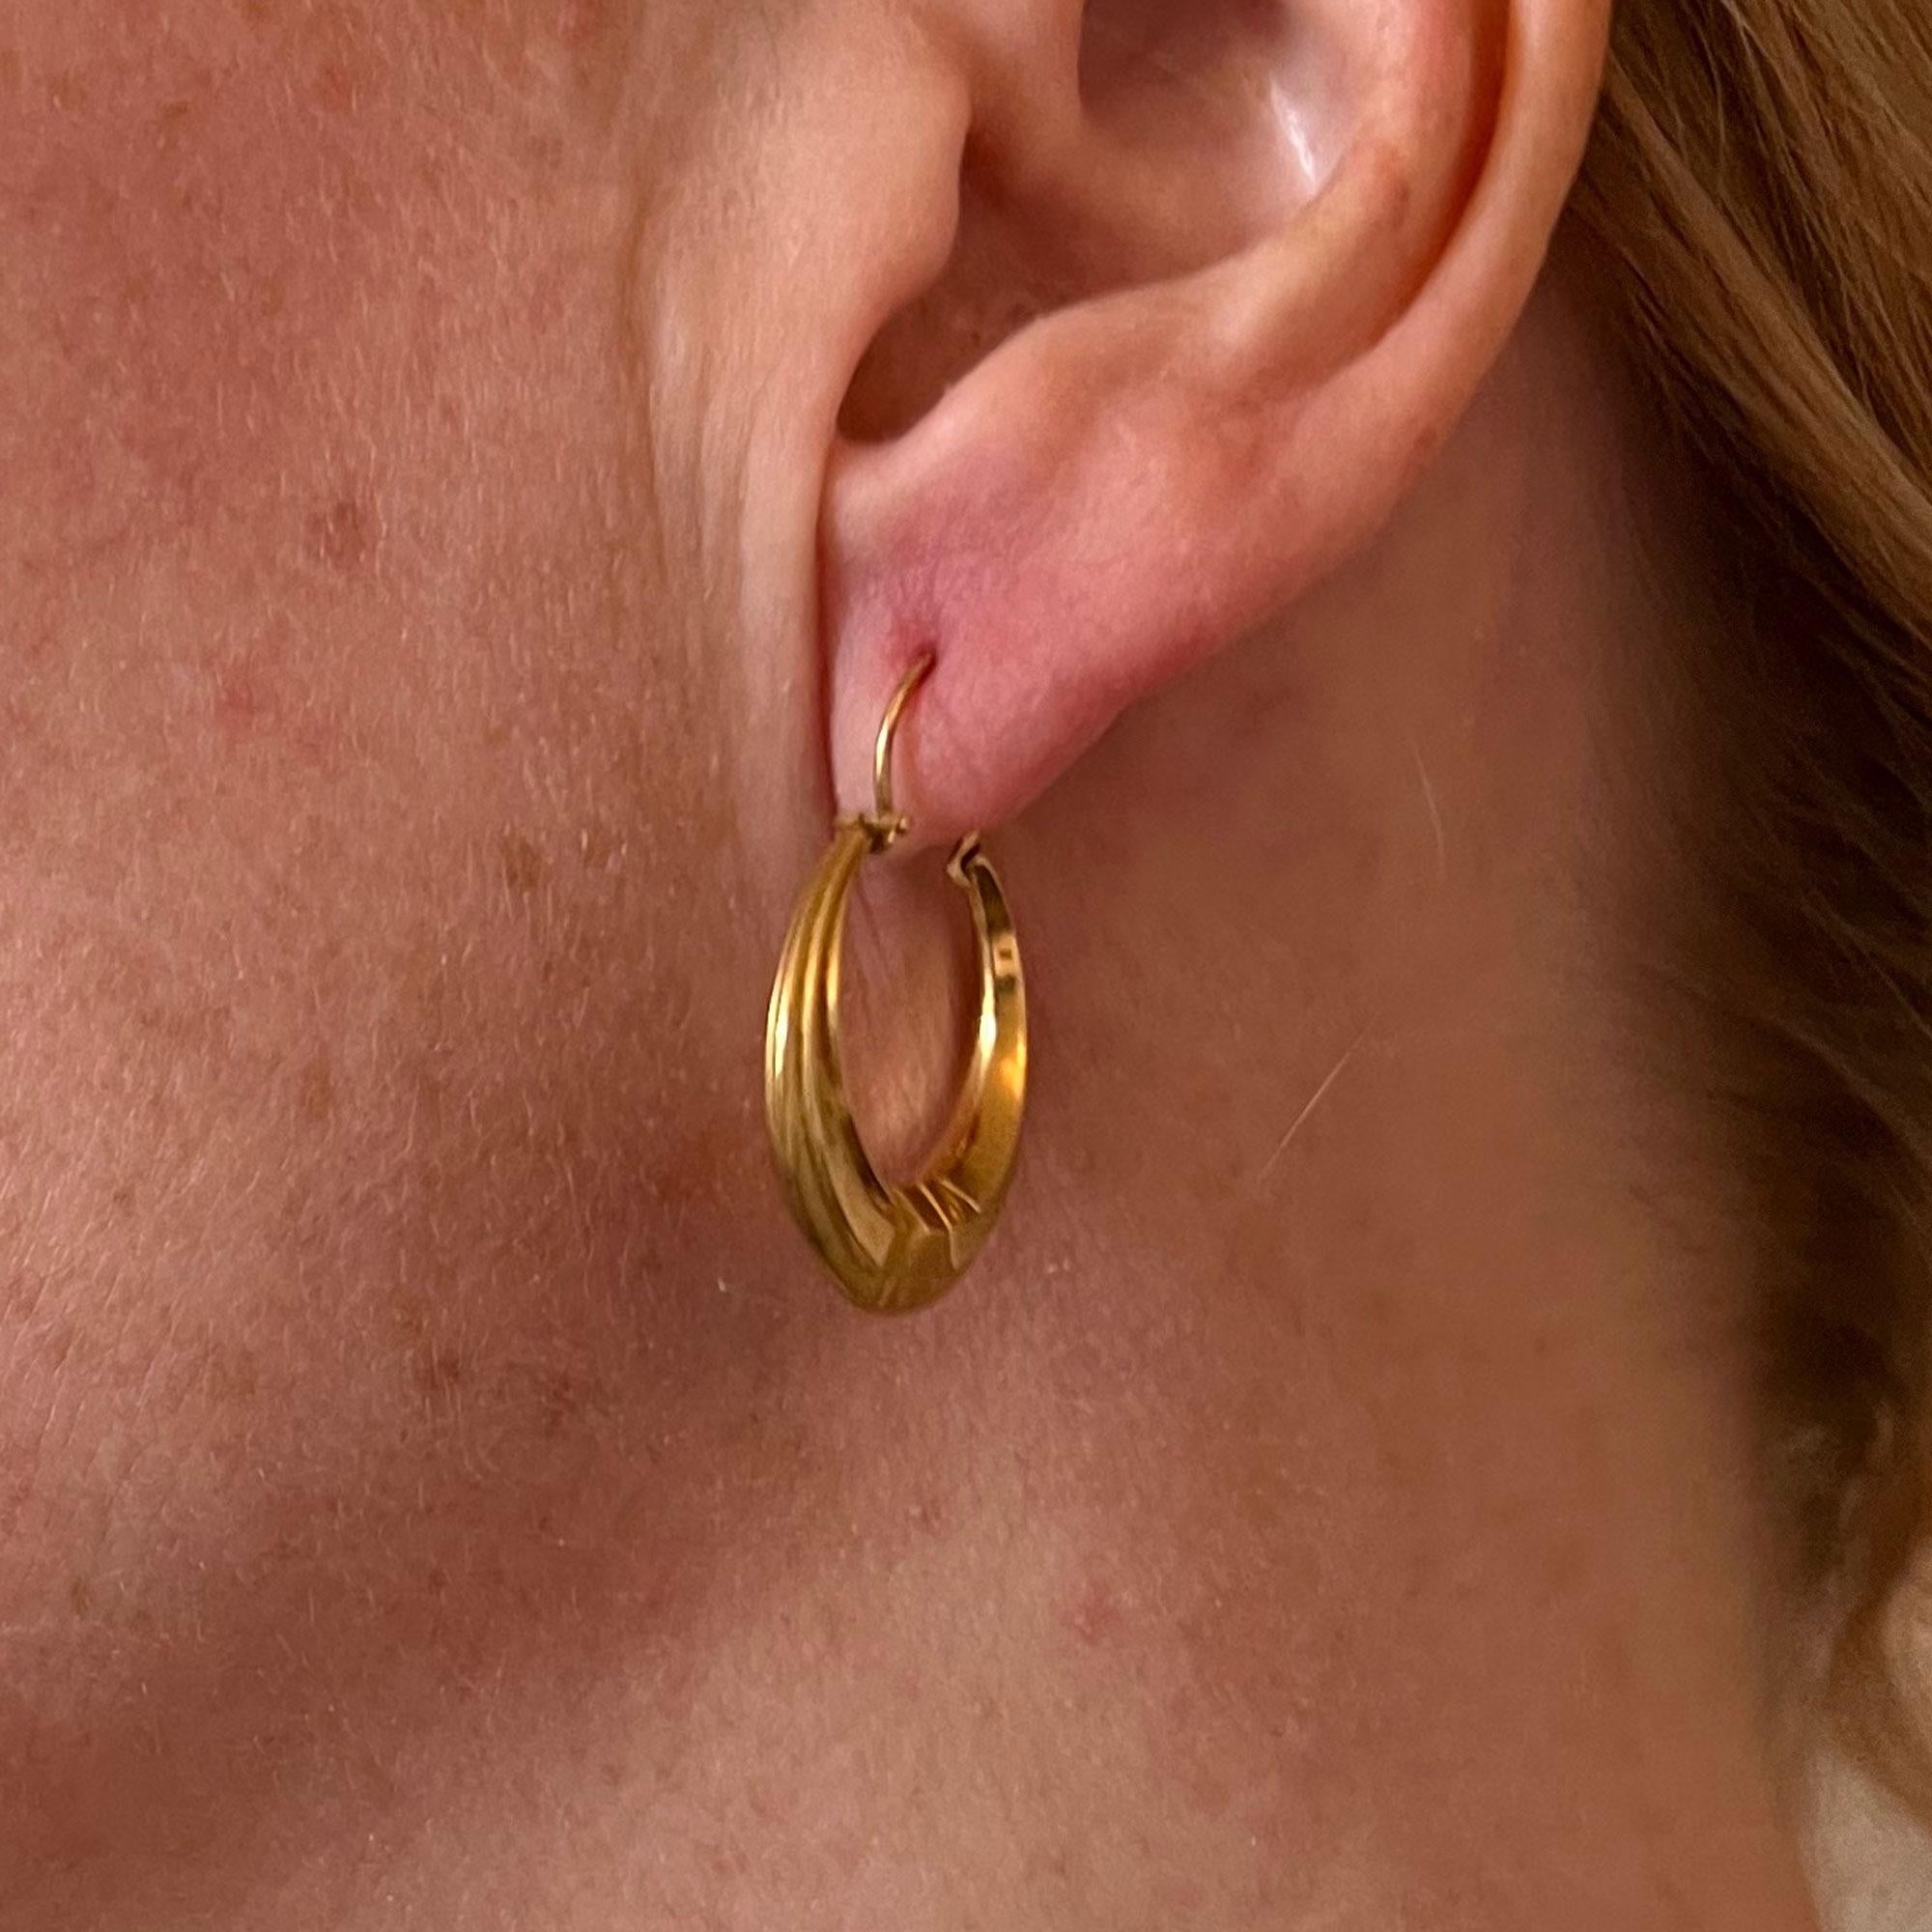 Ein Paar französische Ohrringe aus 18 Karat (18K) Gelbgold, jeweils in Form eines kreolischen Reifs. Für gepiercte Ohren. Gestempelt mit dem Adlerkopf für 18 Karat Gold und französischer Herstellung mit unbekanntem Herstellerzeichen.

Für gepiercte